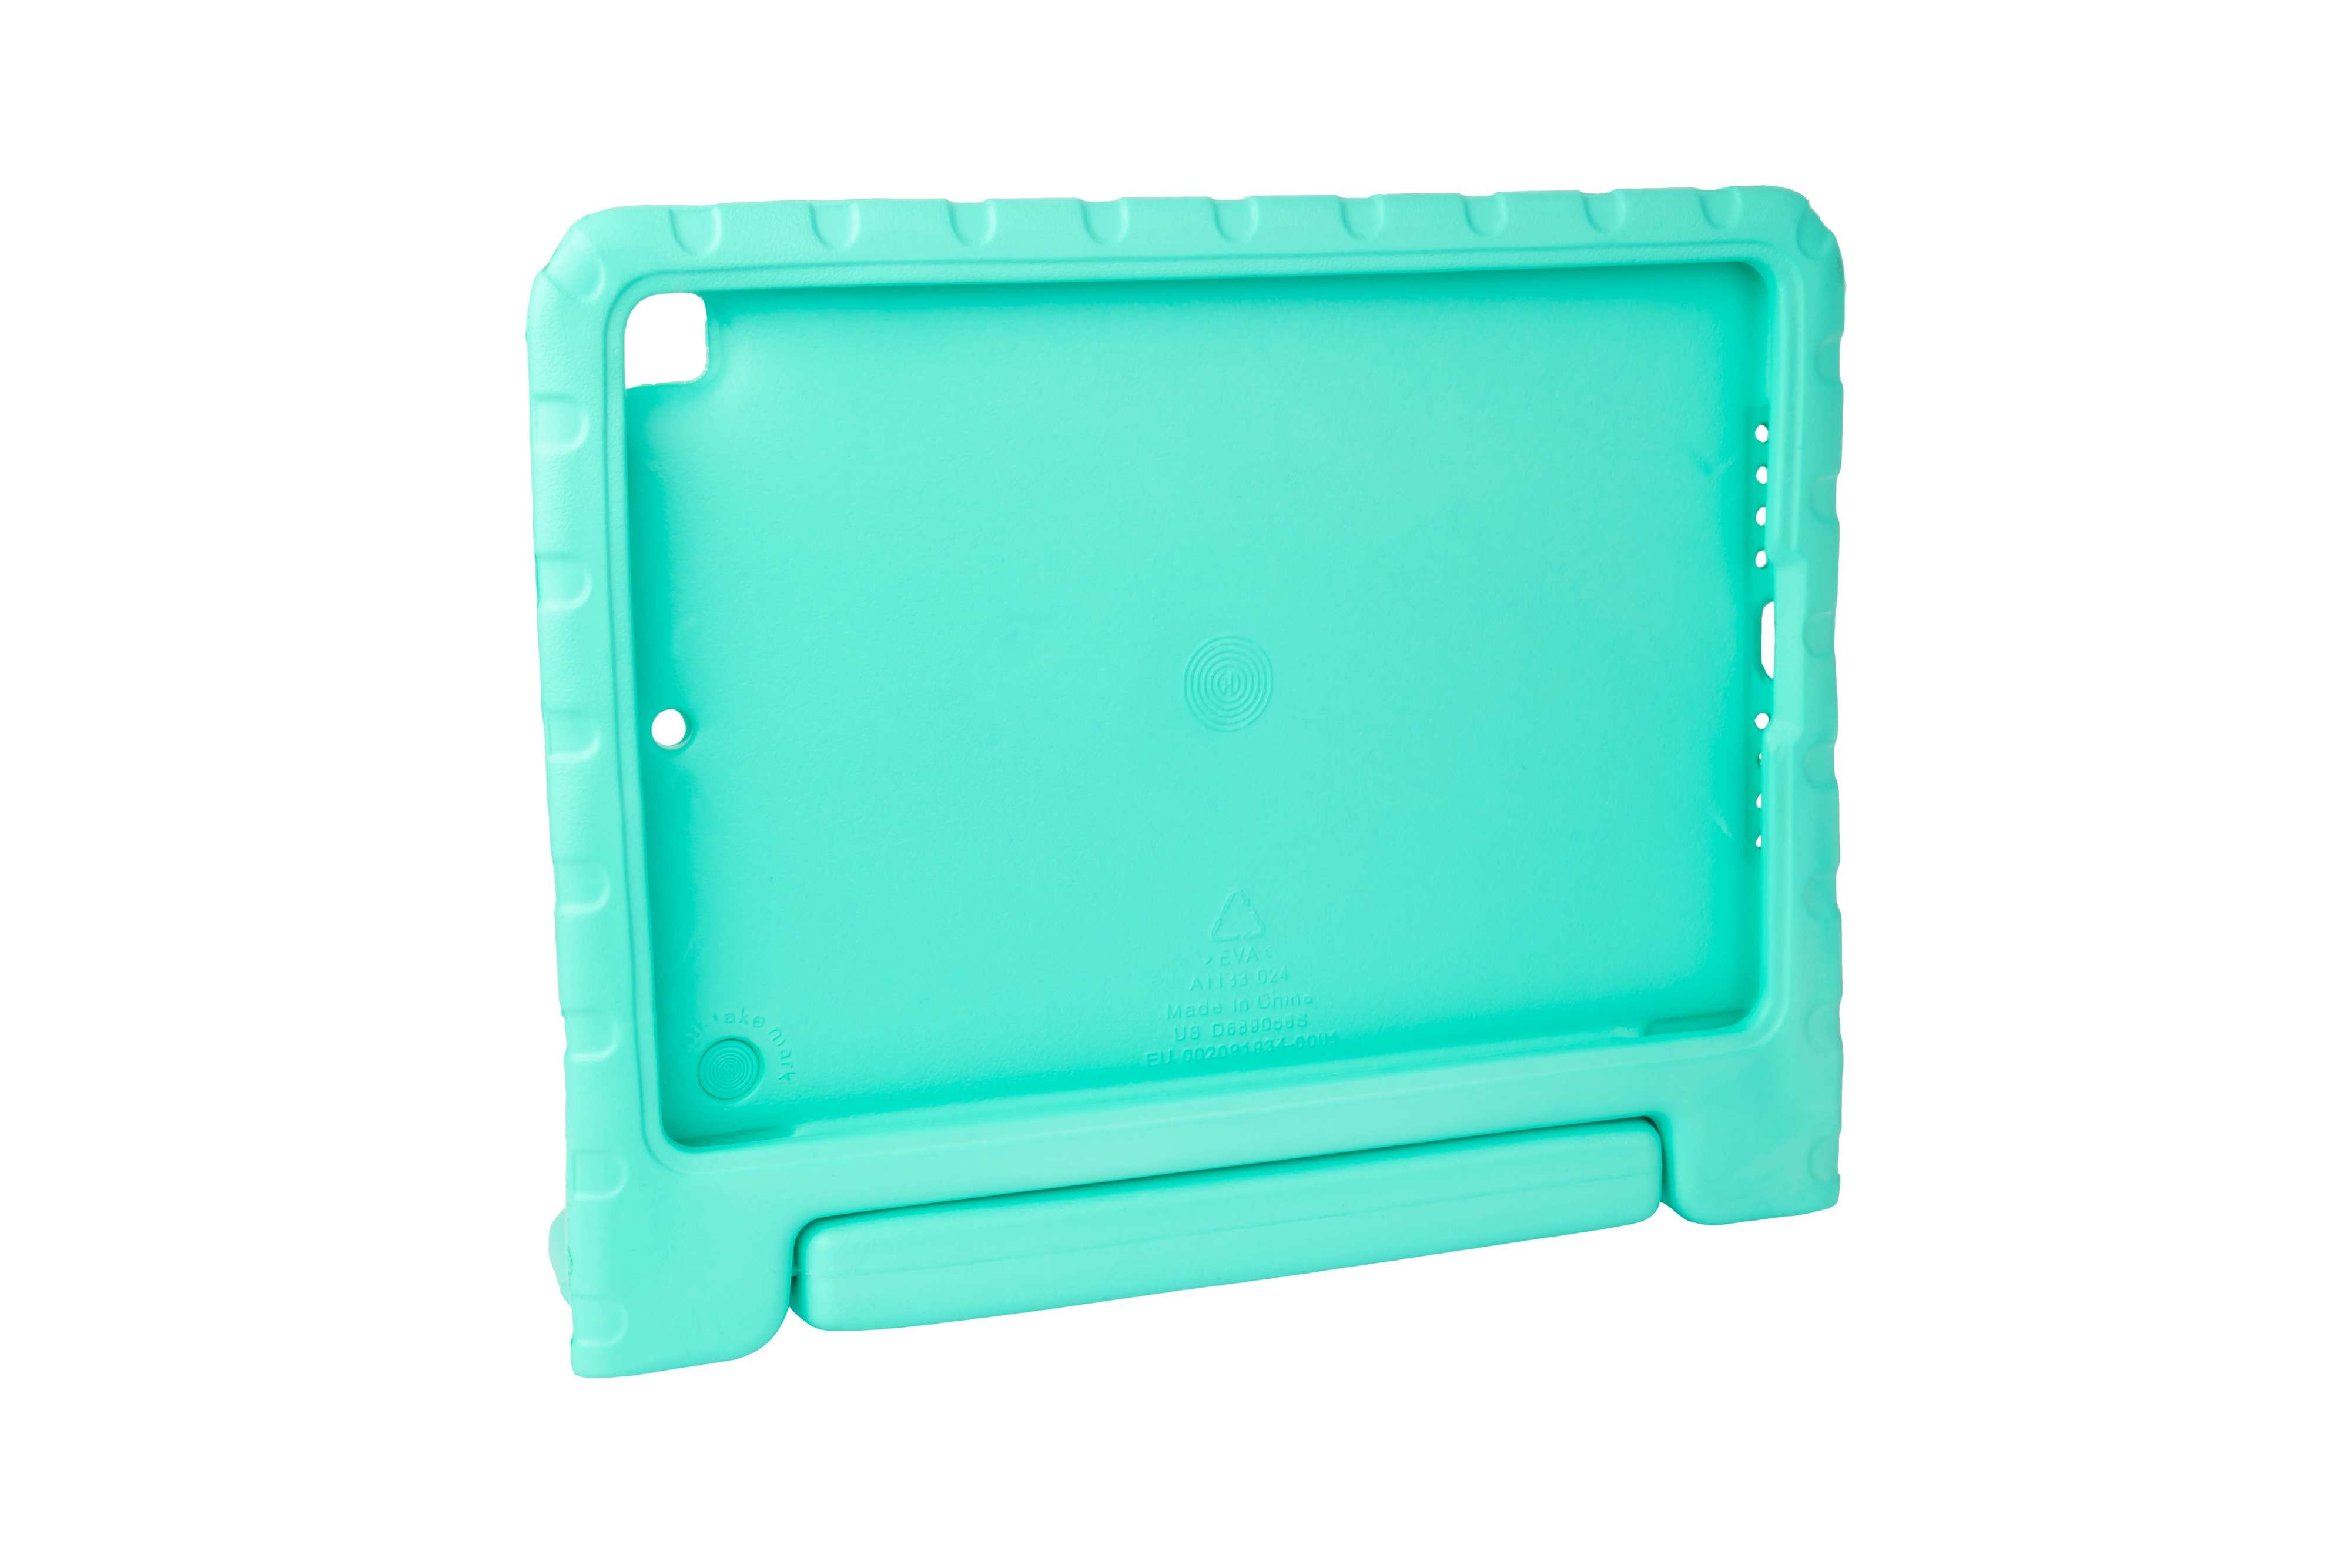 GOOD CONNECTIONS Tablet-Schutzhülle aqua Full Cover Kickstand mit iPad-Hülle EVA-Material, für iPad